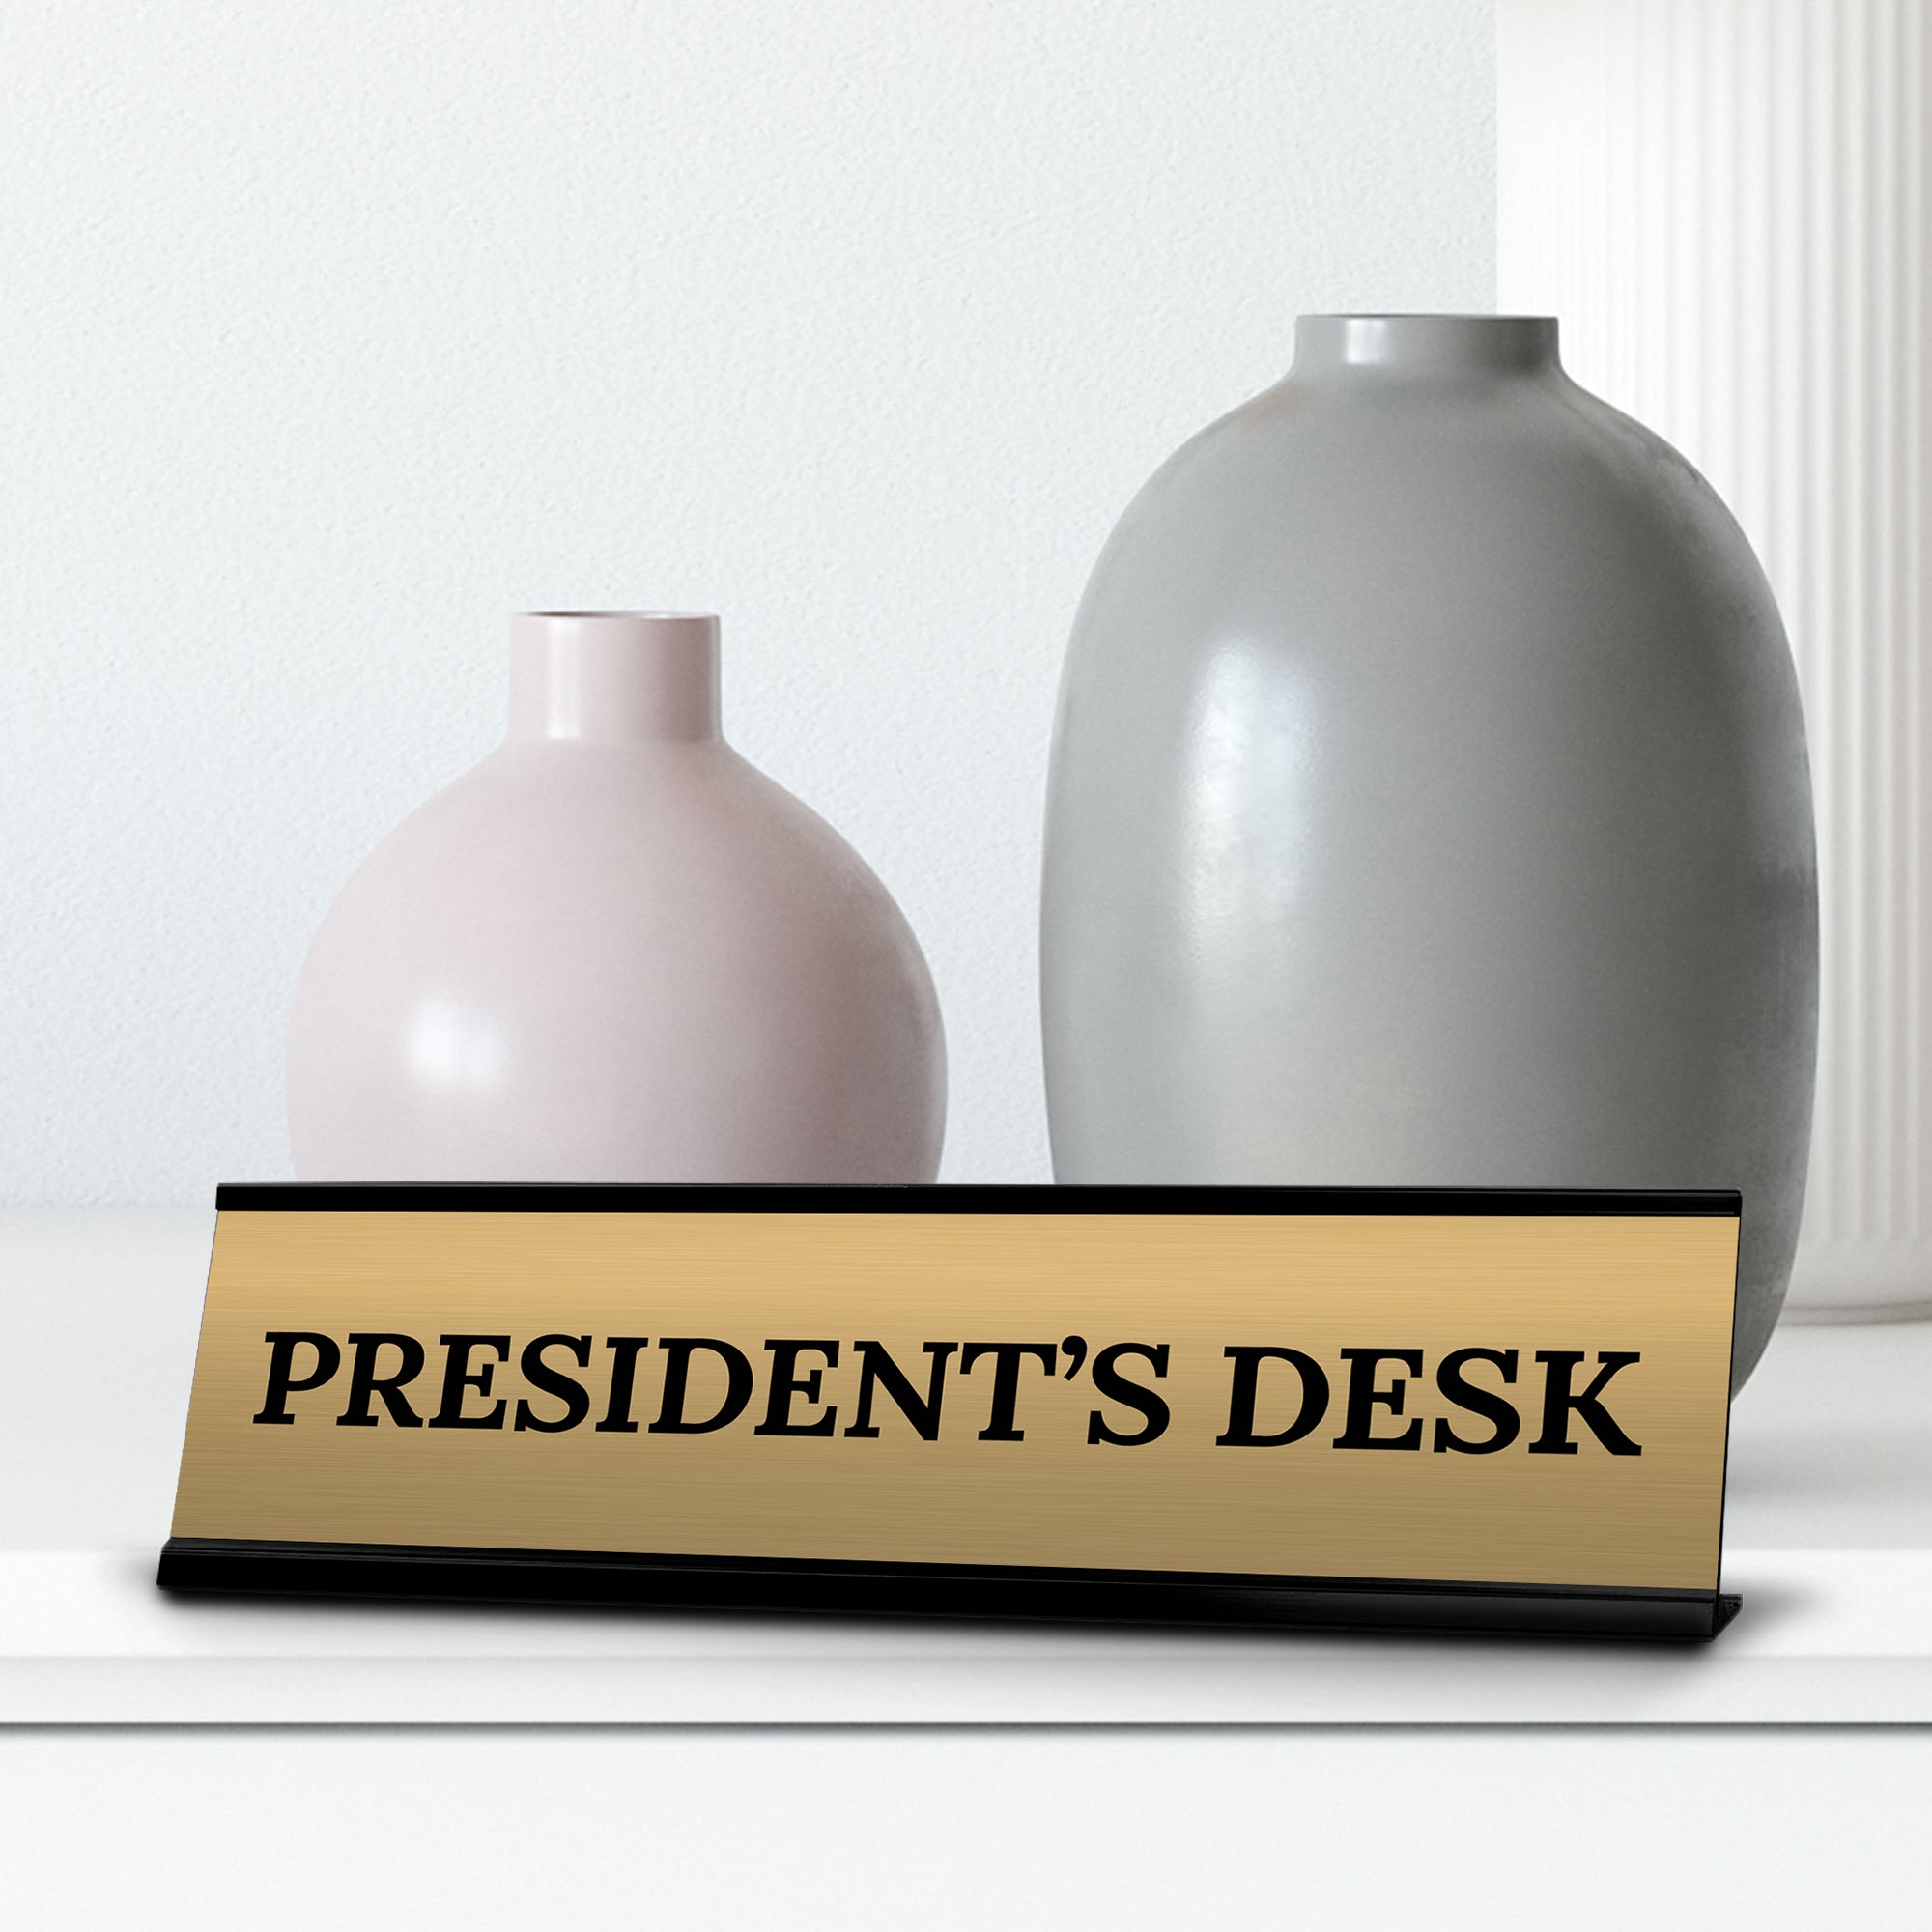 Signs ByLITA President's Desk Office Decoration Gift Black Frame Desk Sign (2x8")